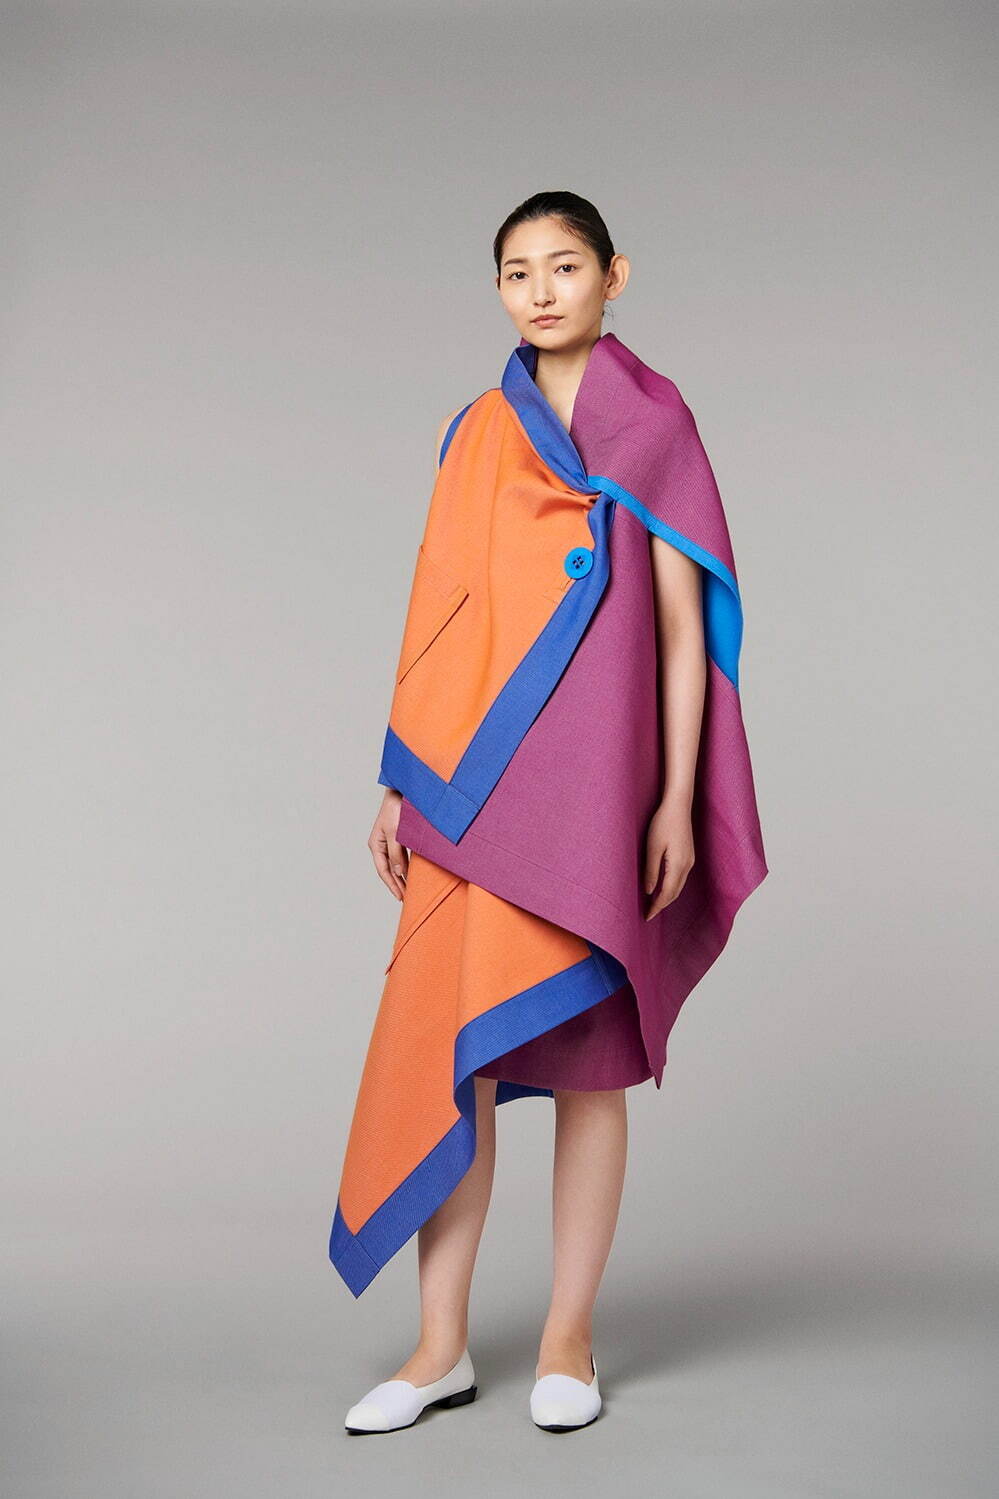 132 5 イッセイ ミヤケの新作 封筒 から着想したドレスやスカート 包む という所作に着目 ファッションプレス